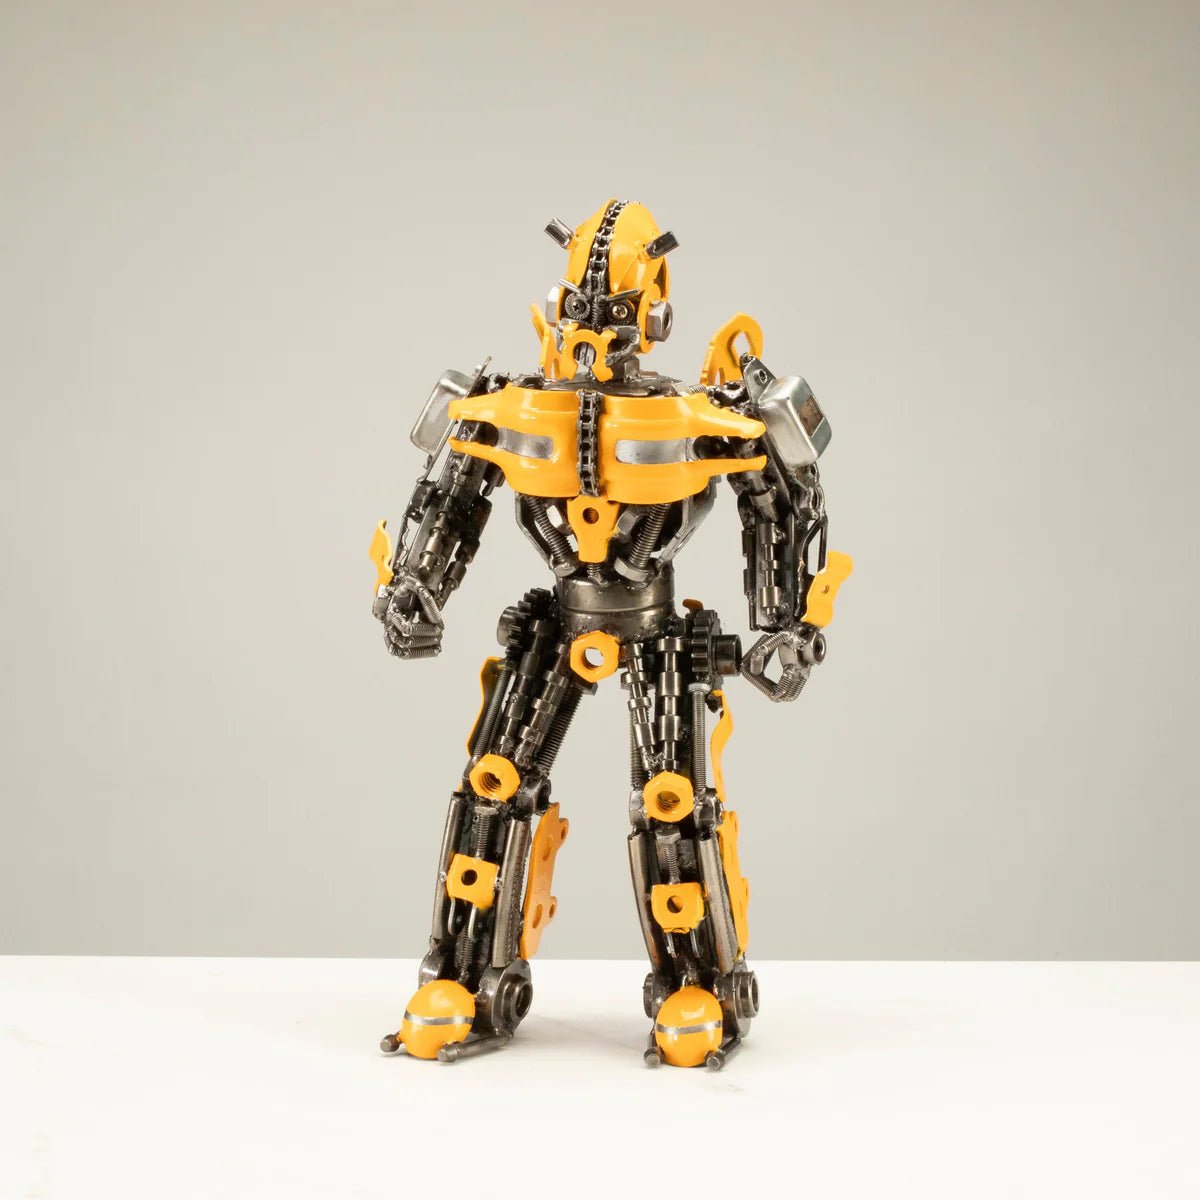 Optimus Prime Transformer Scrap Metal Sculpture Model Recycled Handmade